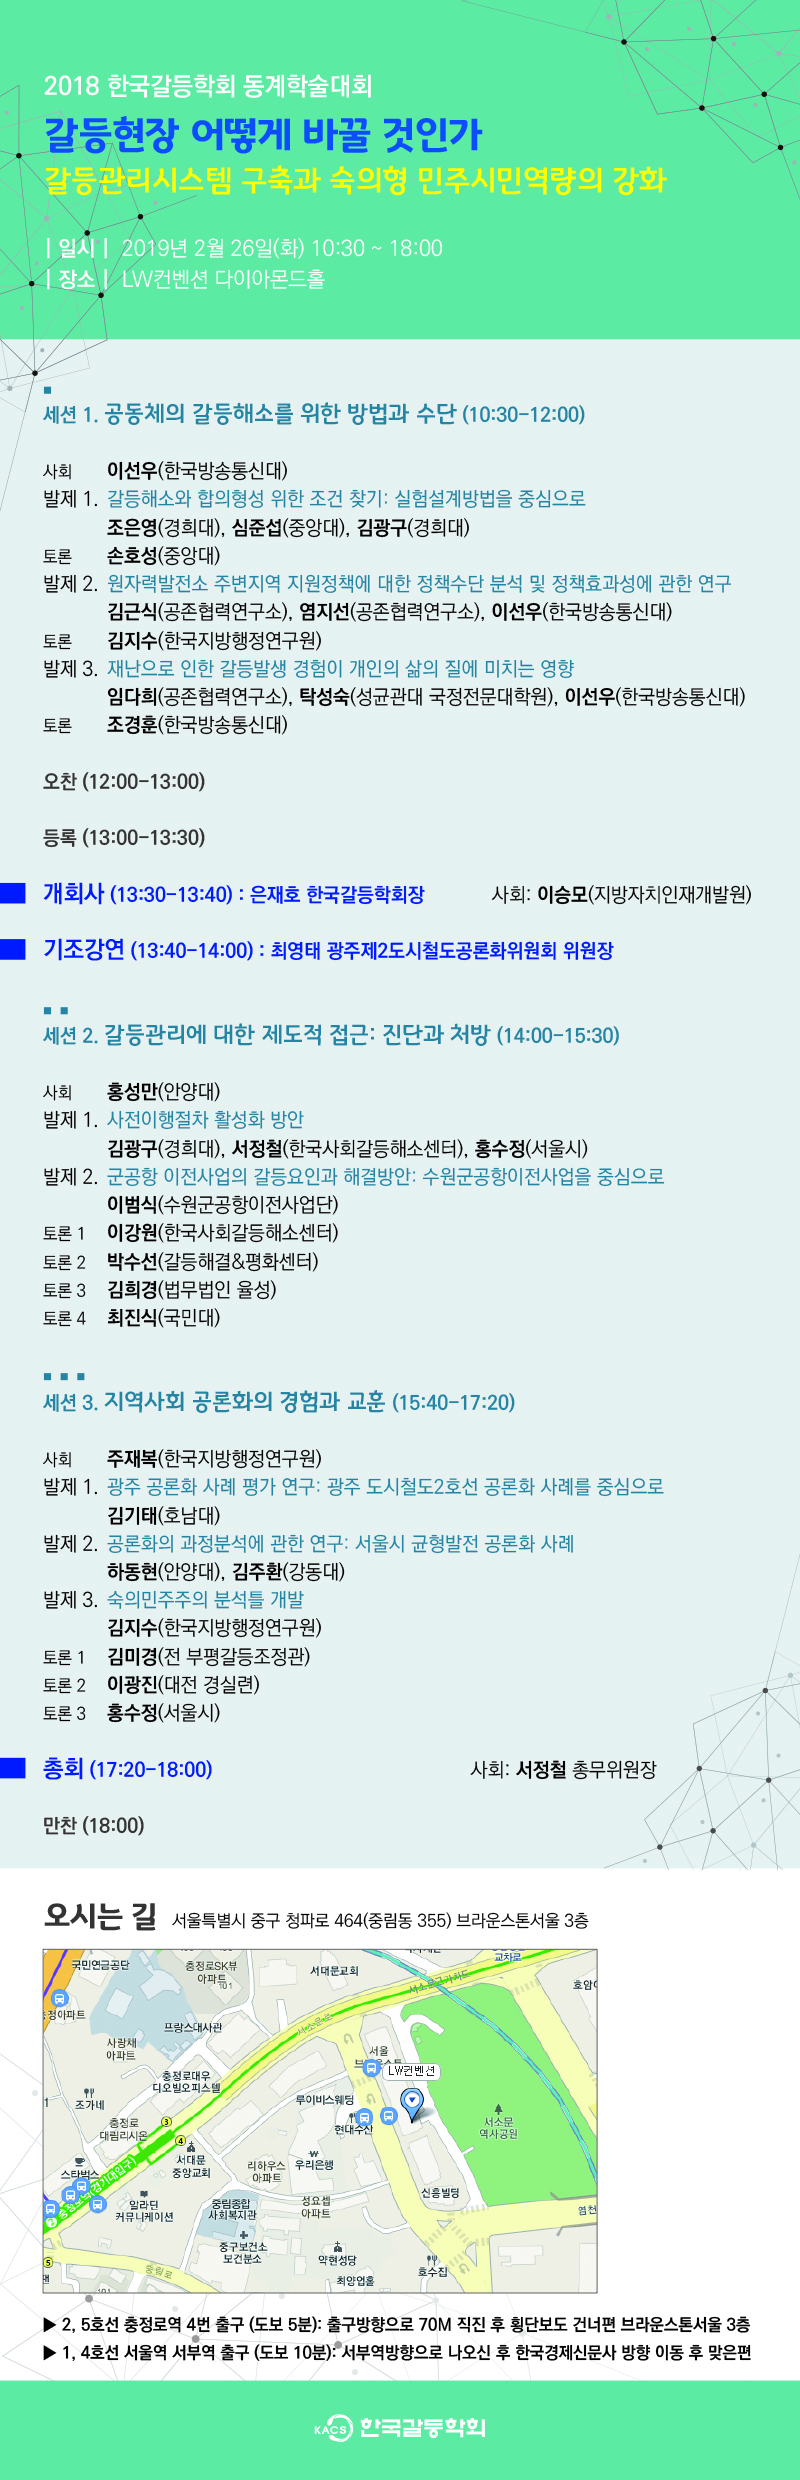 한국갈등학회 2018 동계학술대회 웹초대장1.jpg